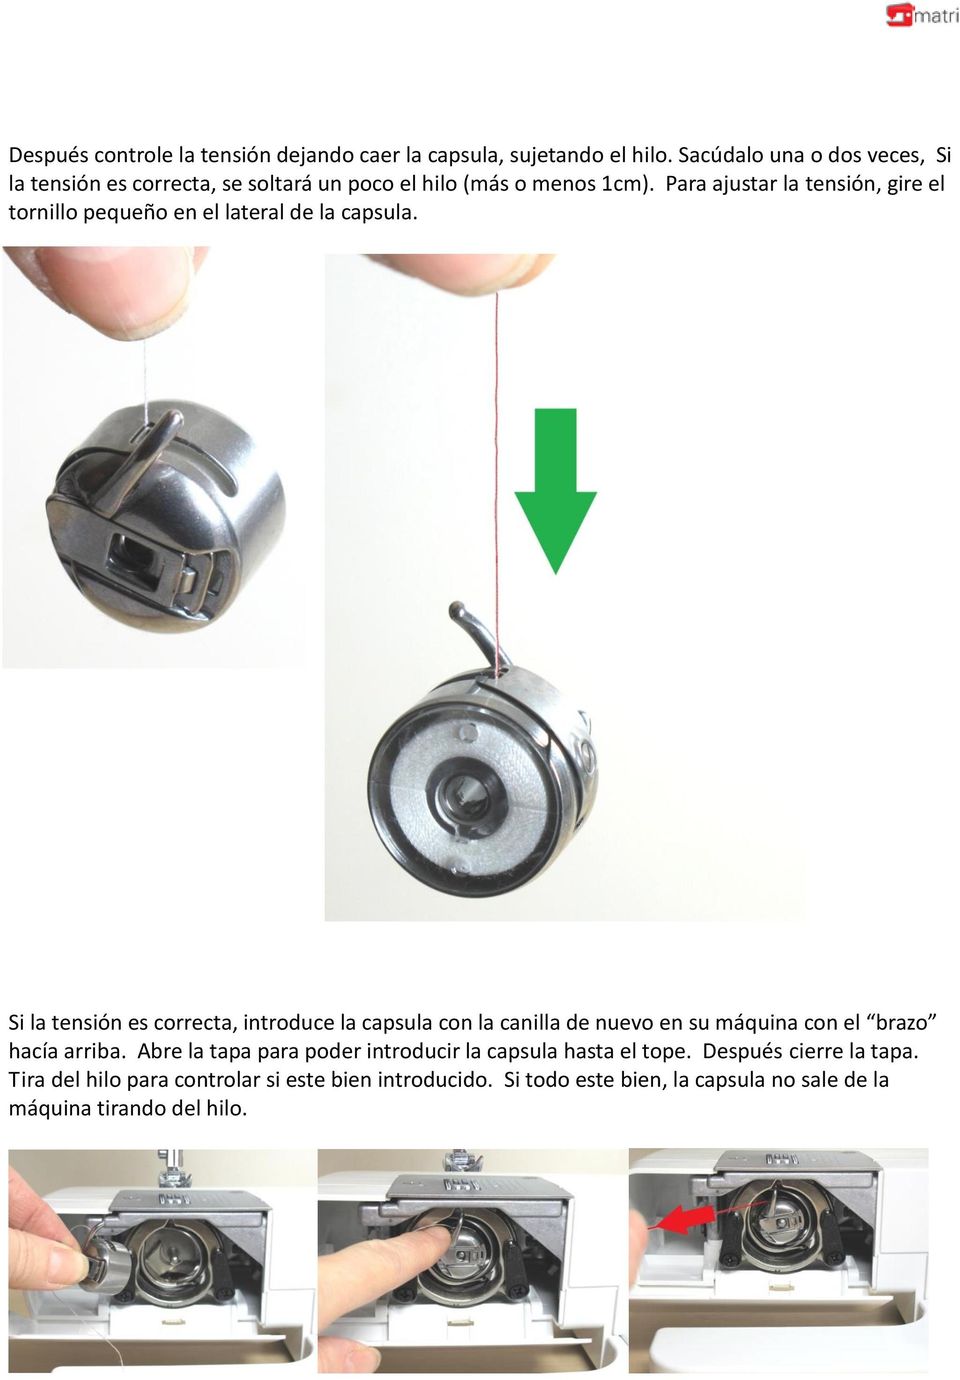 Para ajustar la tensión, gire el tornillo pequeño en el lateral de la capsula.